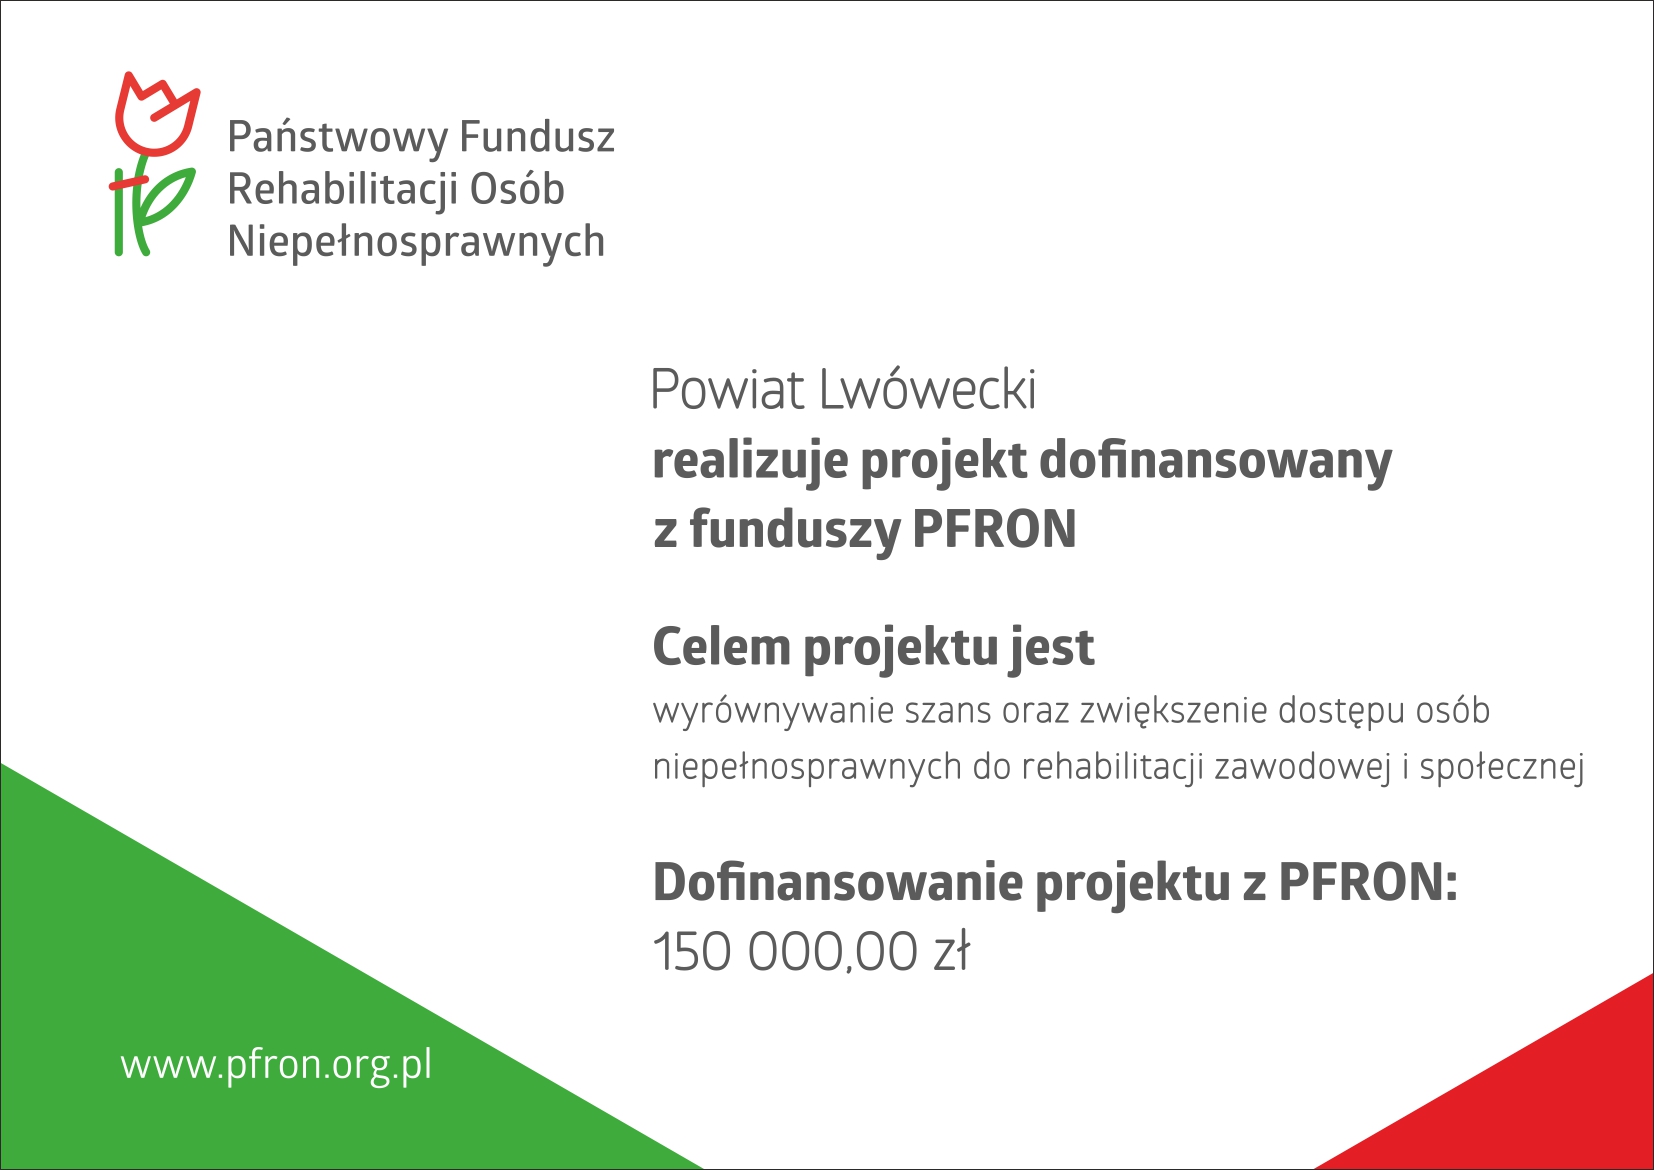 logotypy PFRON oraz napis: Powiat Lwówecki realizuje projekt dofinansowany z funduszy PFRON. Celem projektu jest wyrównywanie szans oraz zwiększenie dostępu osób niepełnosprawnych do rehabilitacji zawodowej i społecznej. Dofinansowanie projektu z PFRON: 1500000 zł.